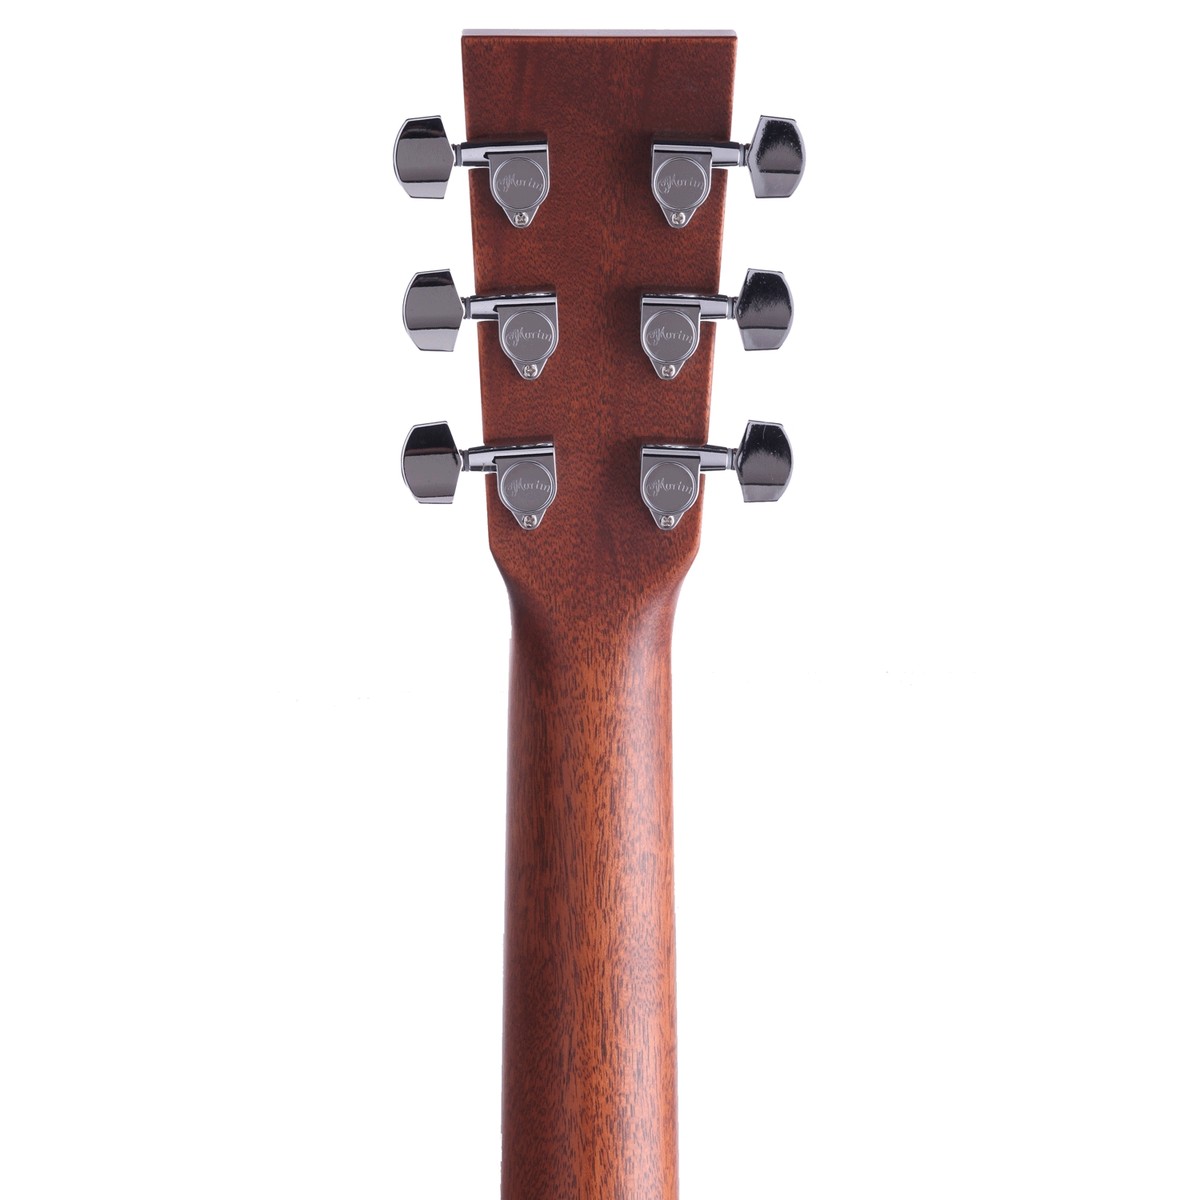 Электроакустическая гитара MARTIN DCPA4 Rosewood